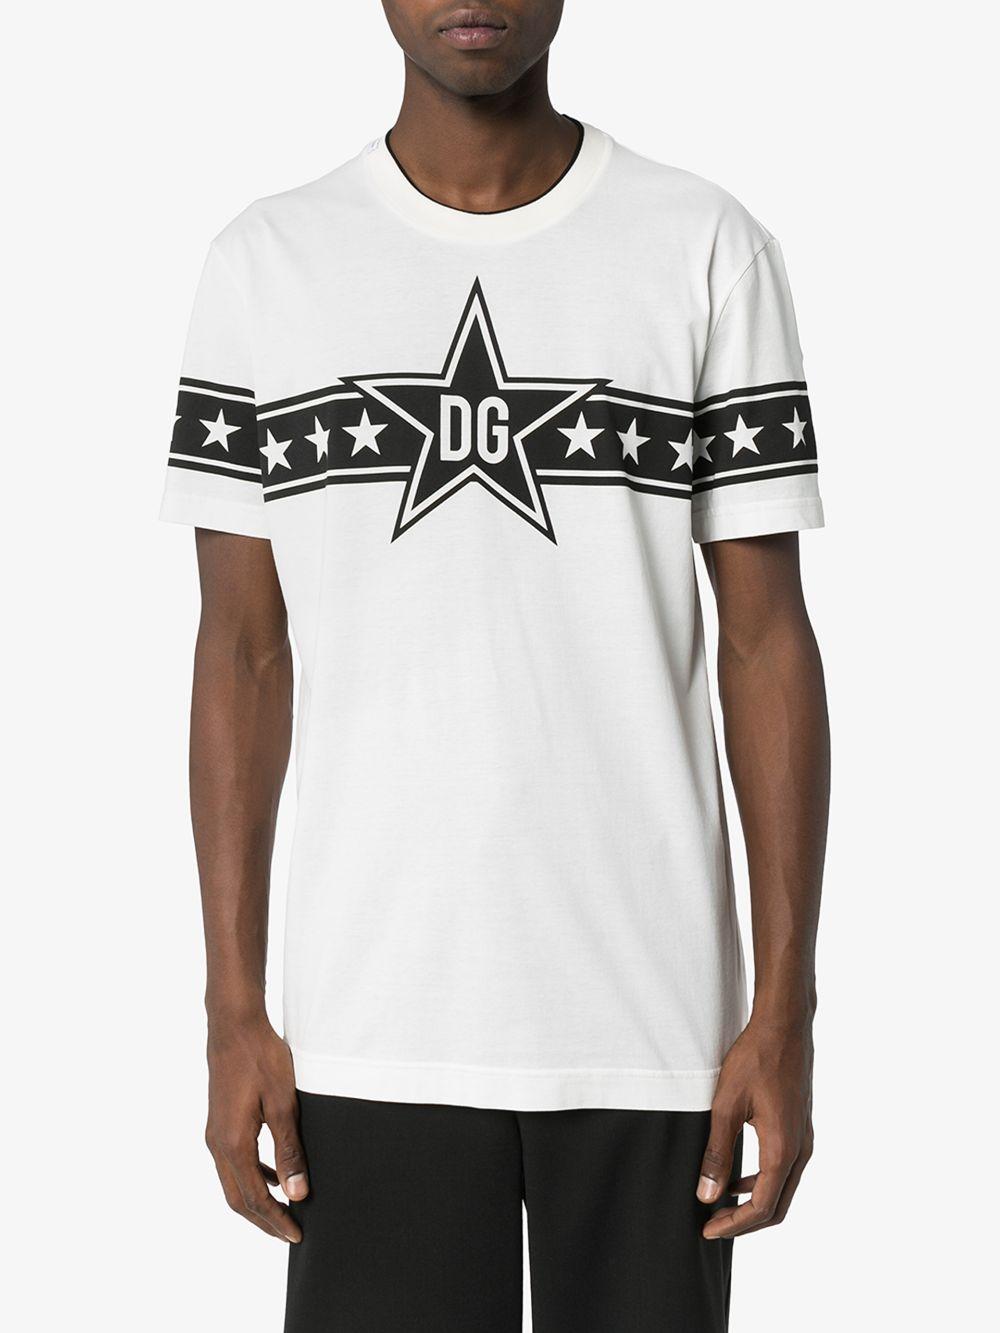 Dolce & Gabbana Cotton Dg Star Logo T-shirt in White for Men - Lyst